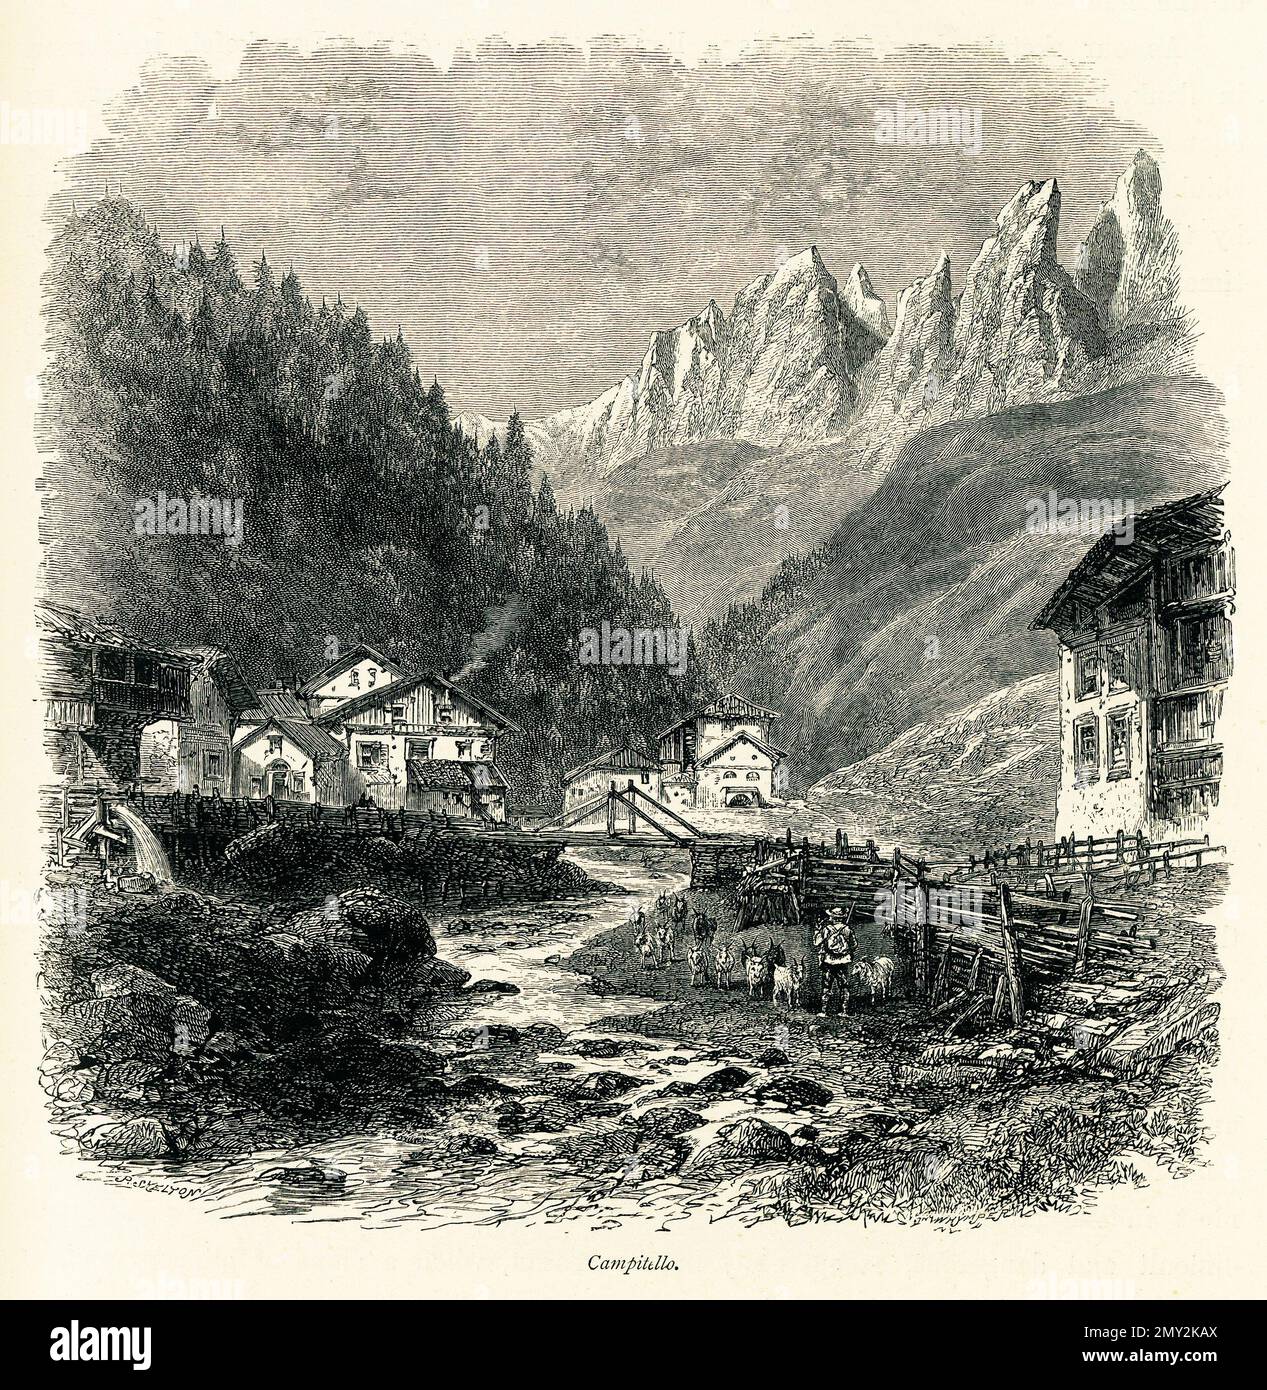 Antica illustrazione di Campitello, un paese in Alto Adige, Italia. Incisione pubblicata in picturesque Europe, Vol. V (Cassell & Company, Limited: Lo Foto Stock